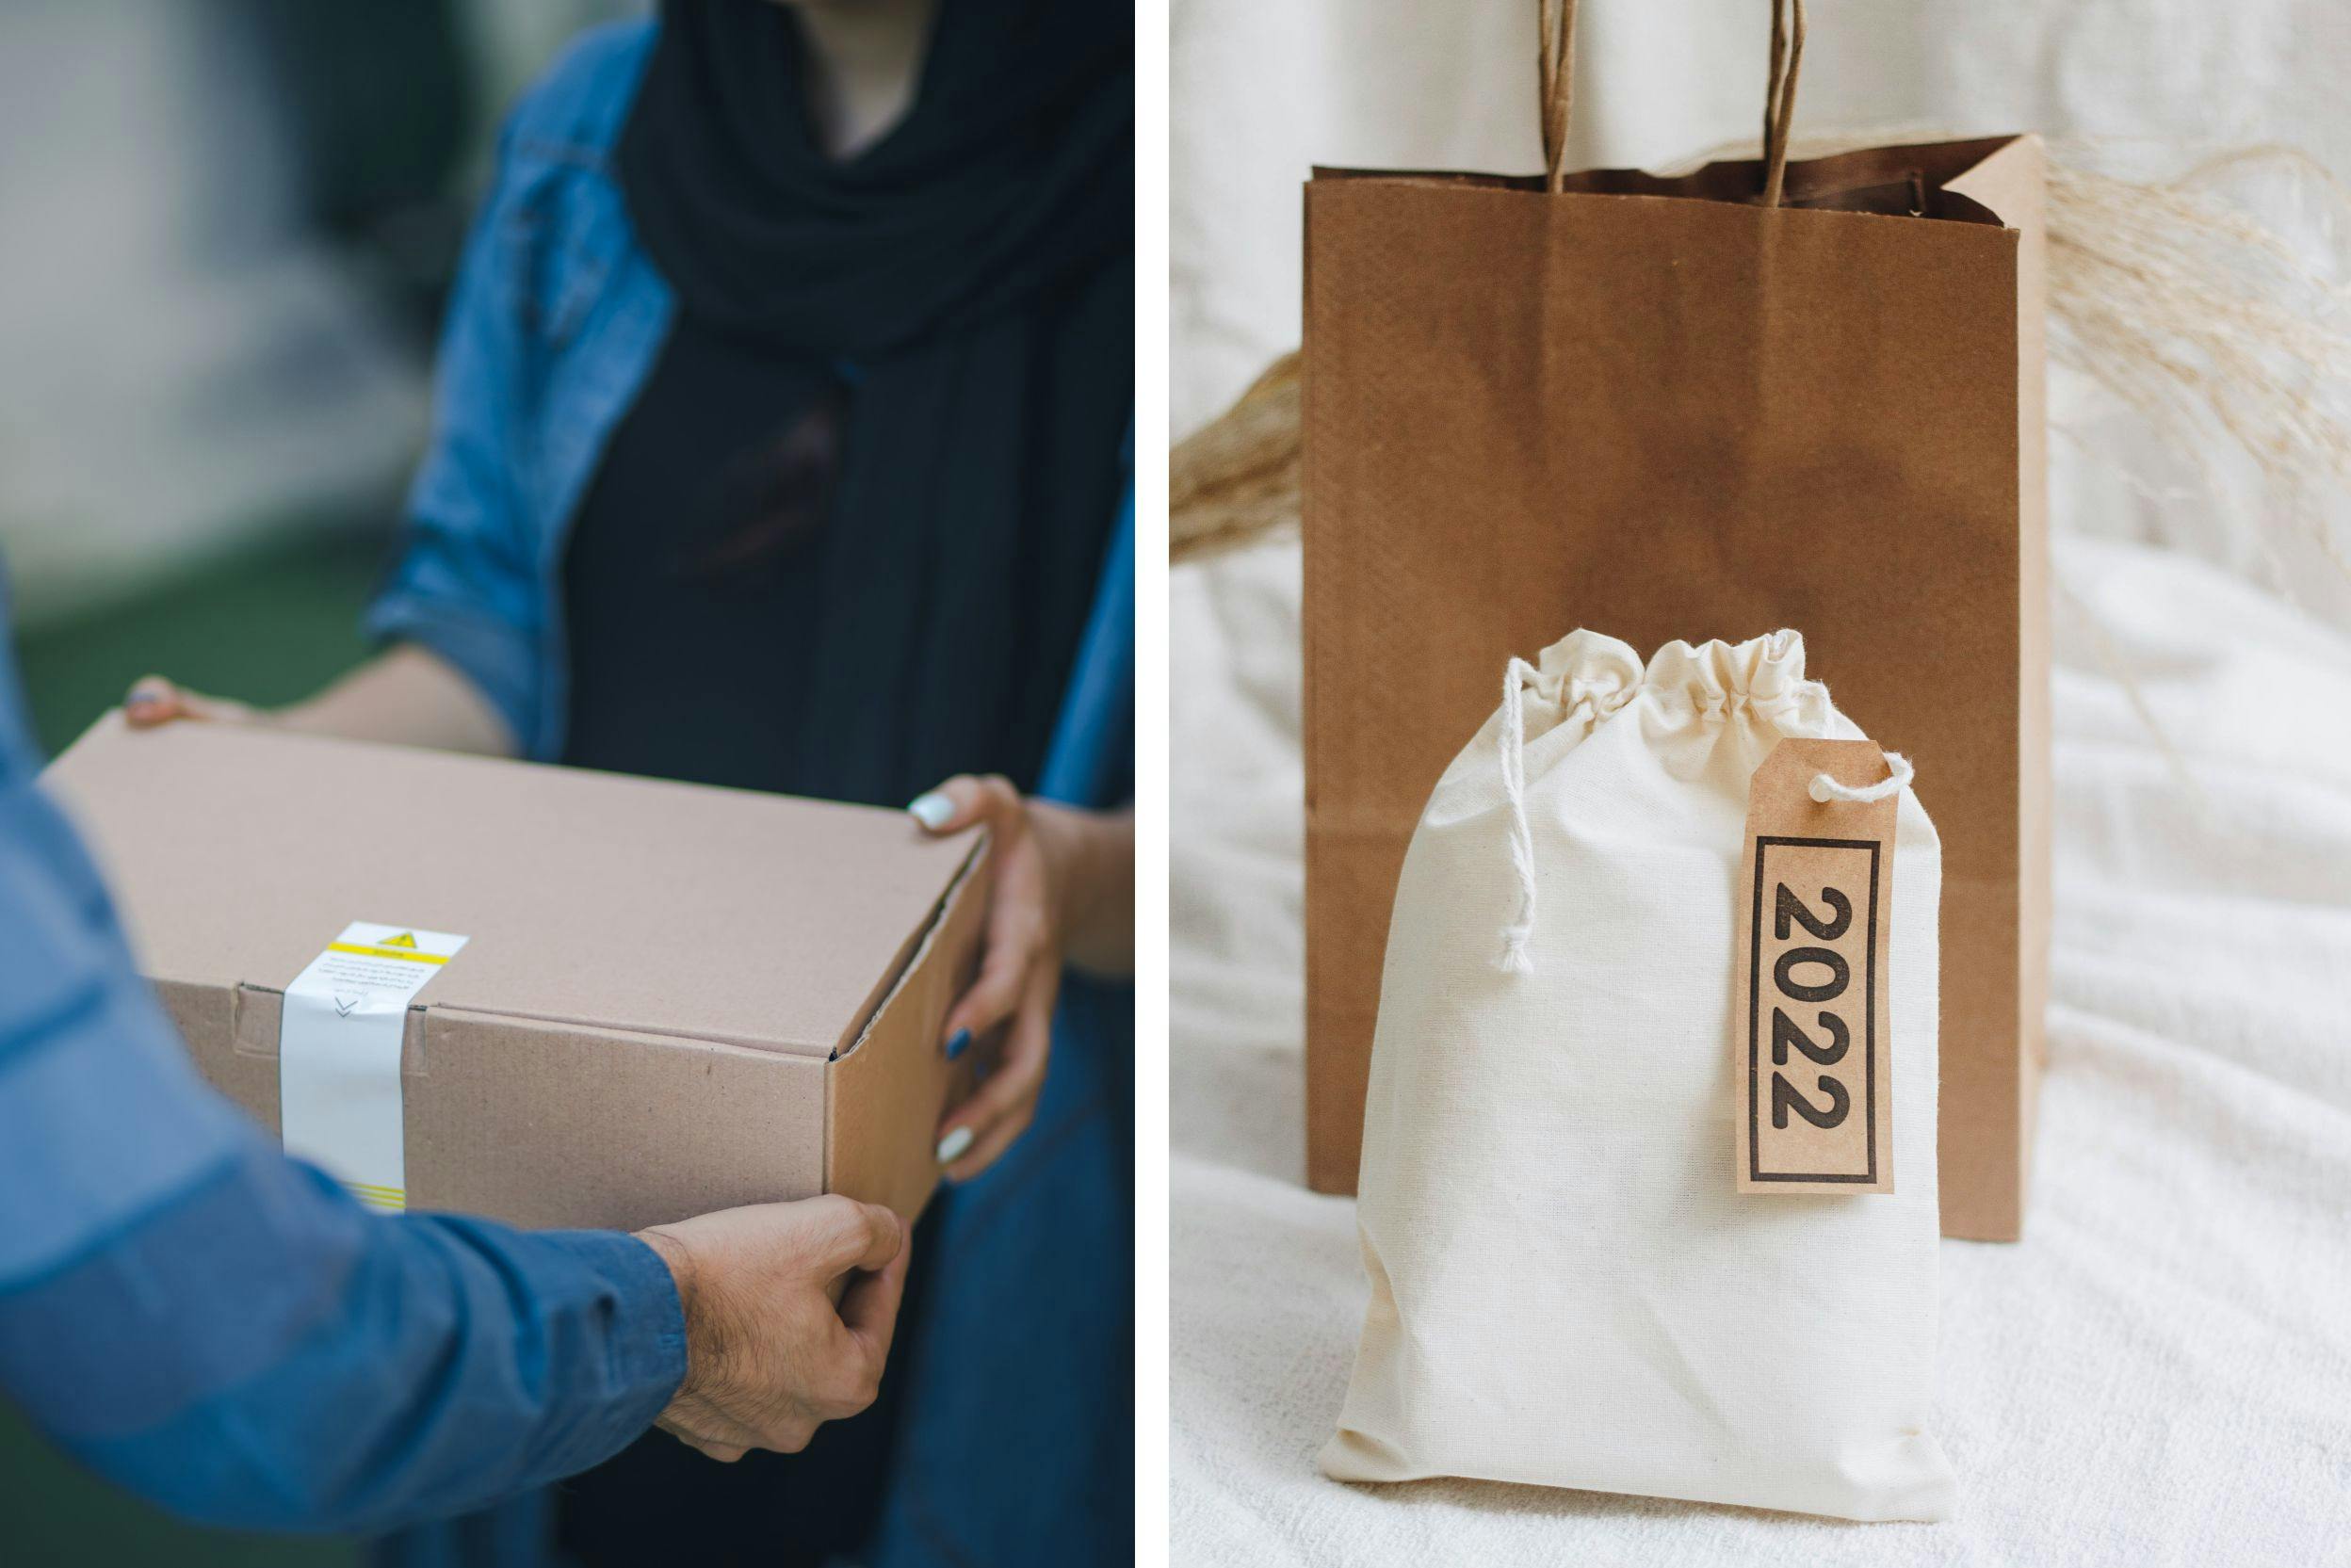 Deux images de livraison, l'une avec deux personnes et une boite en carton, et l'autre, un sac en papier et un sac en tissu avec une étiquette 